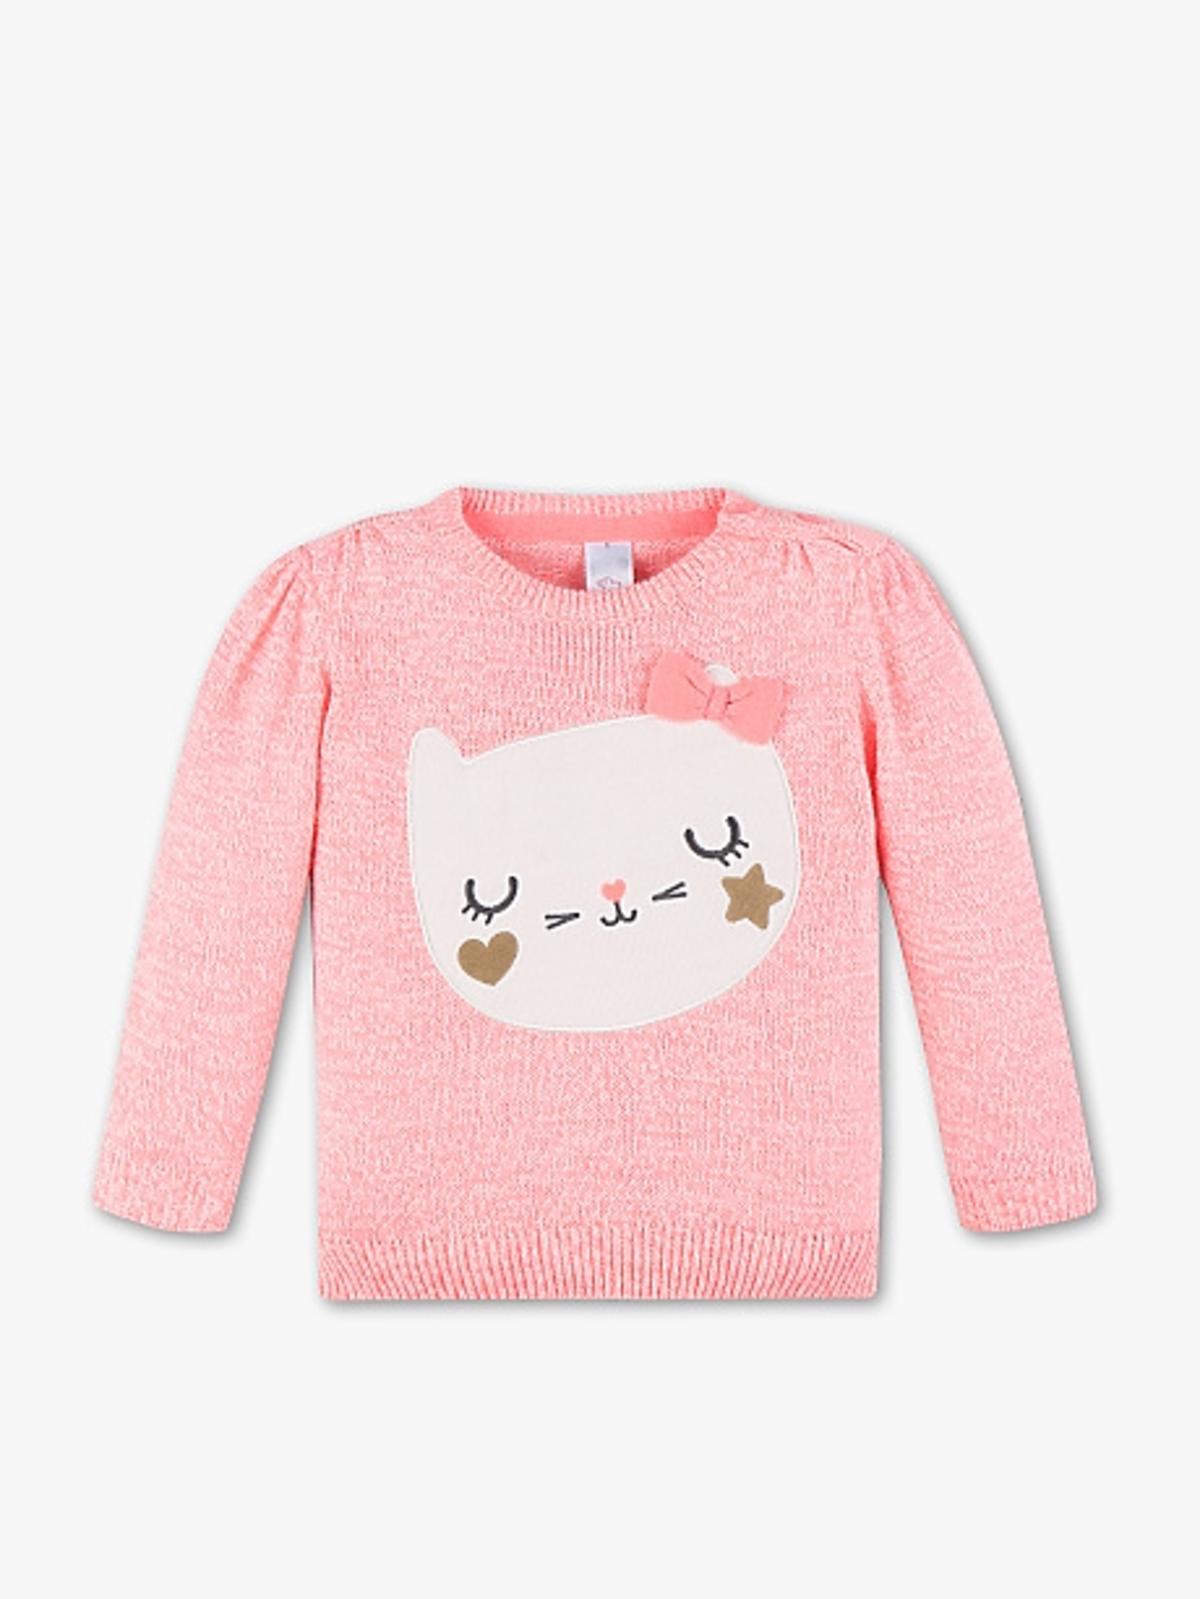 sweterek różowy z kotkiem dla niemowlęcia